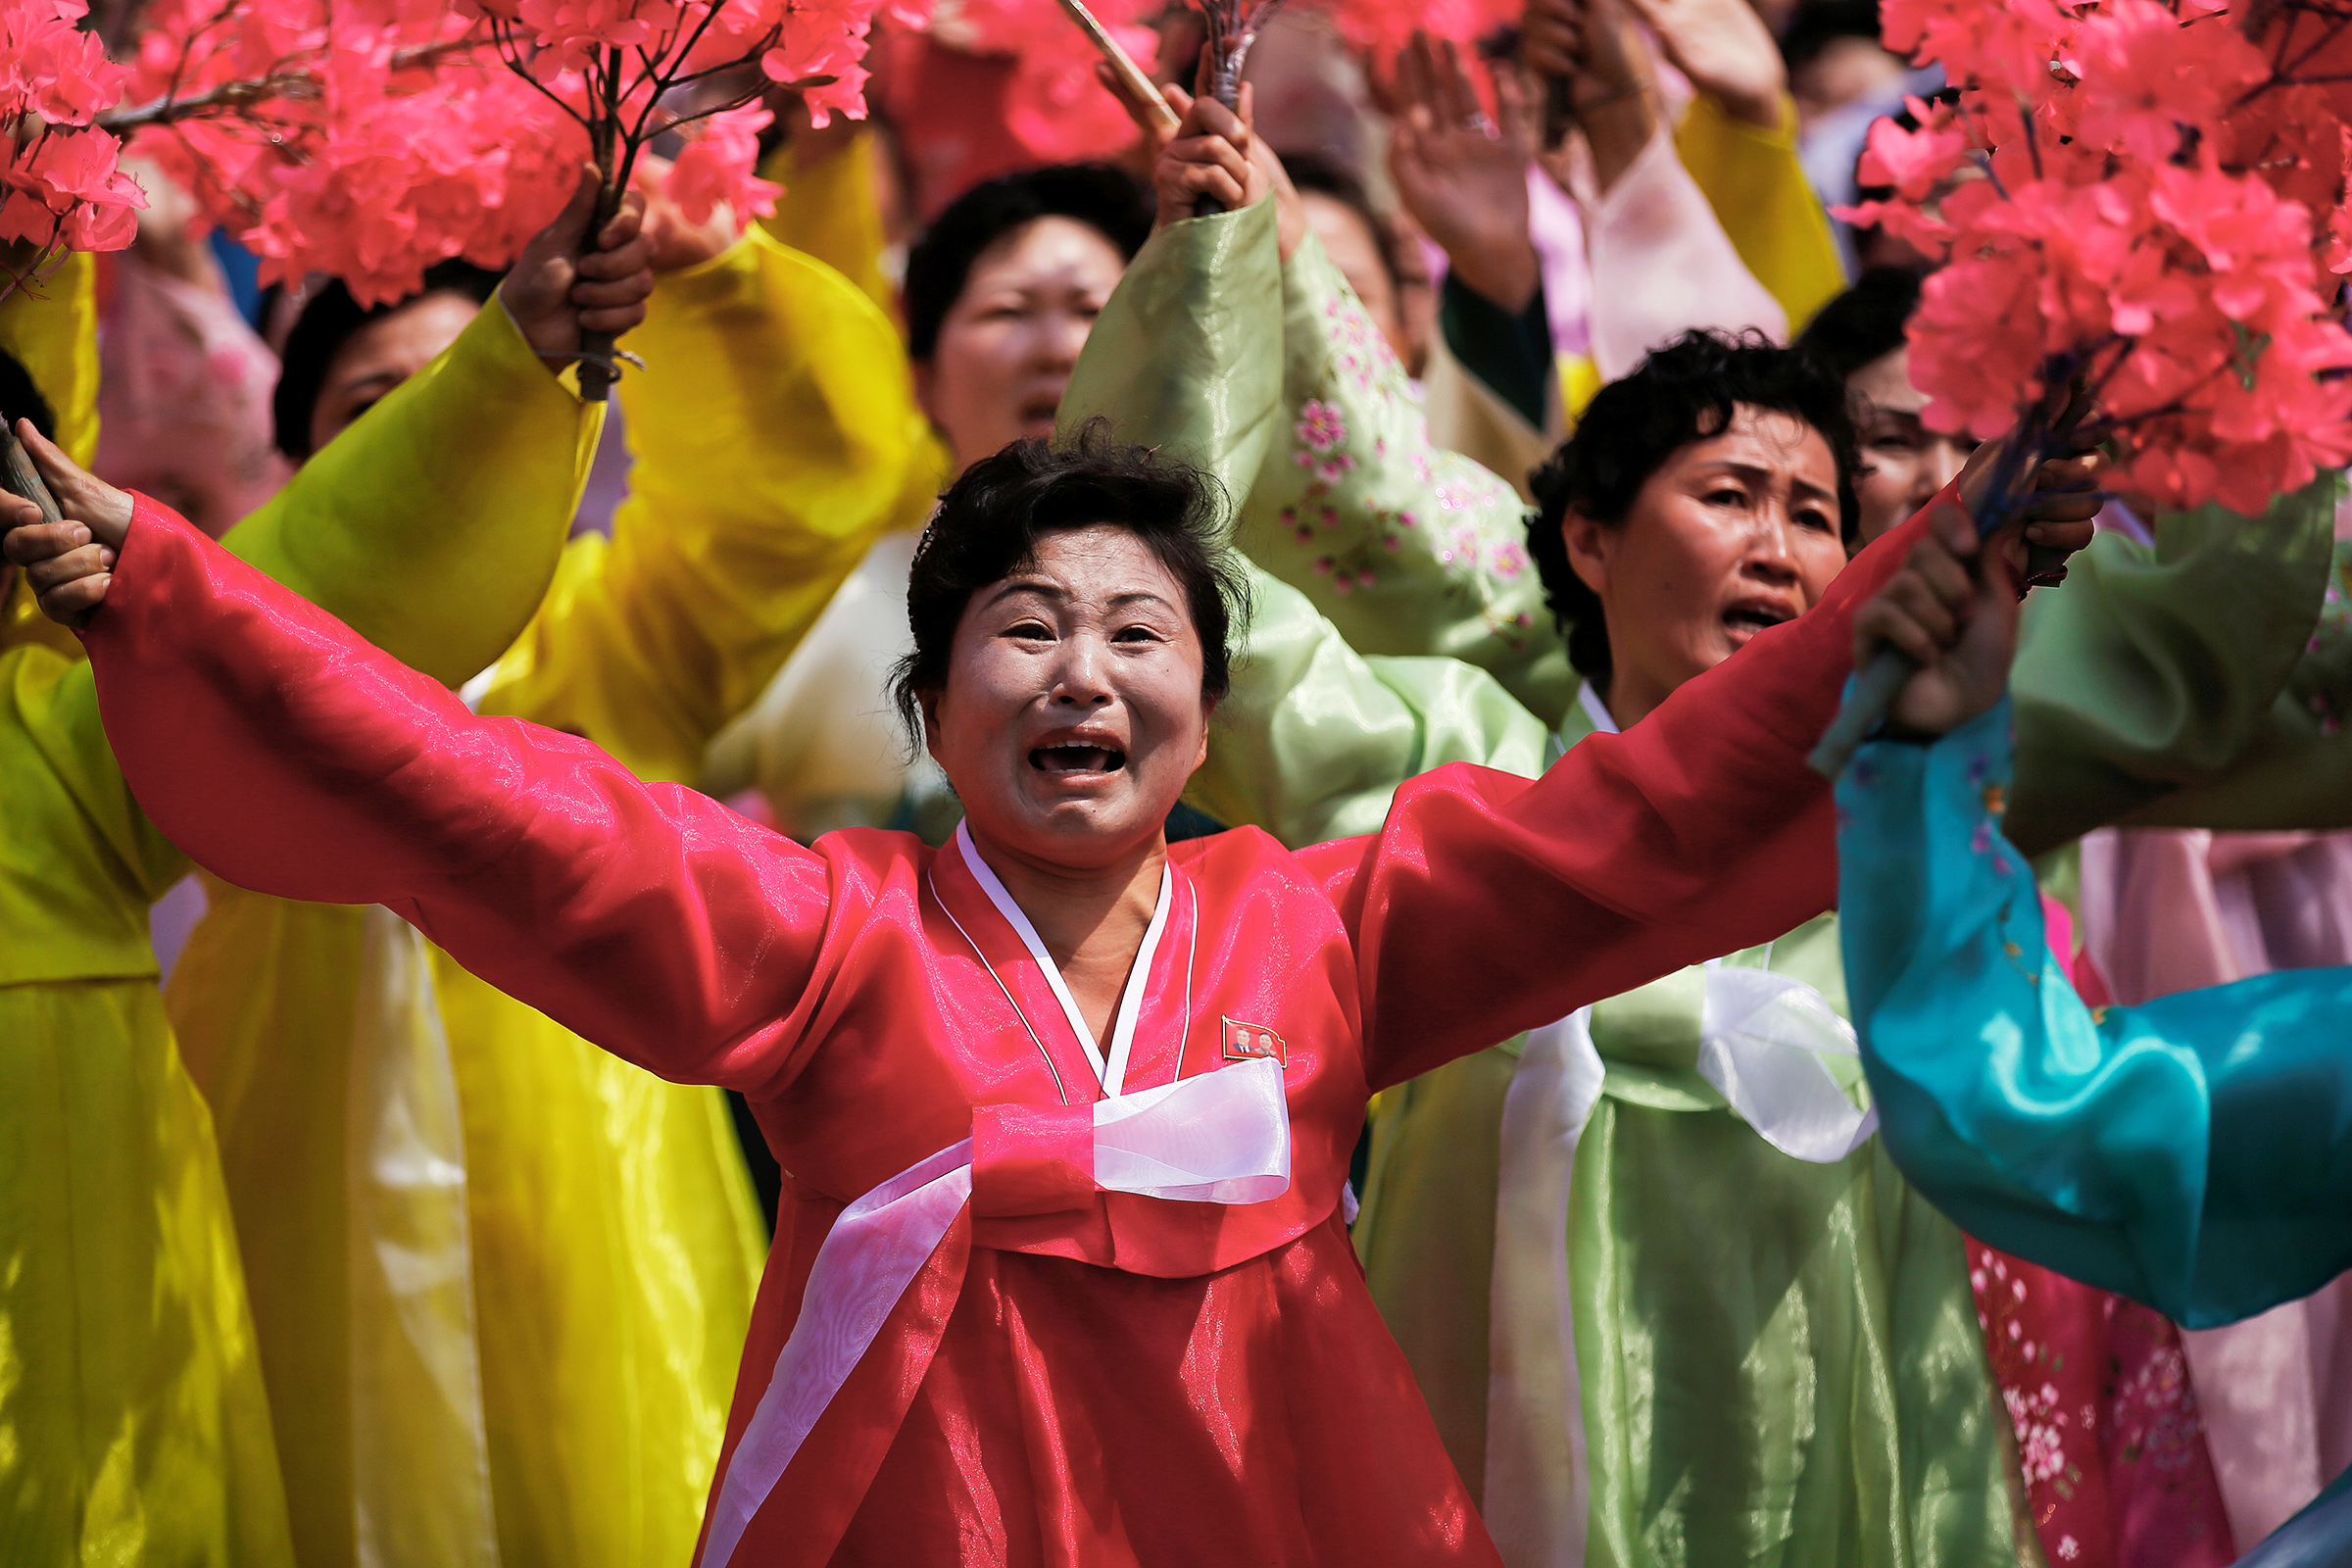 Традиционно перед парадами работающим в Пхеньяне на производстве увеличивают производственный план. Этот период называют битвой.